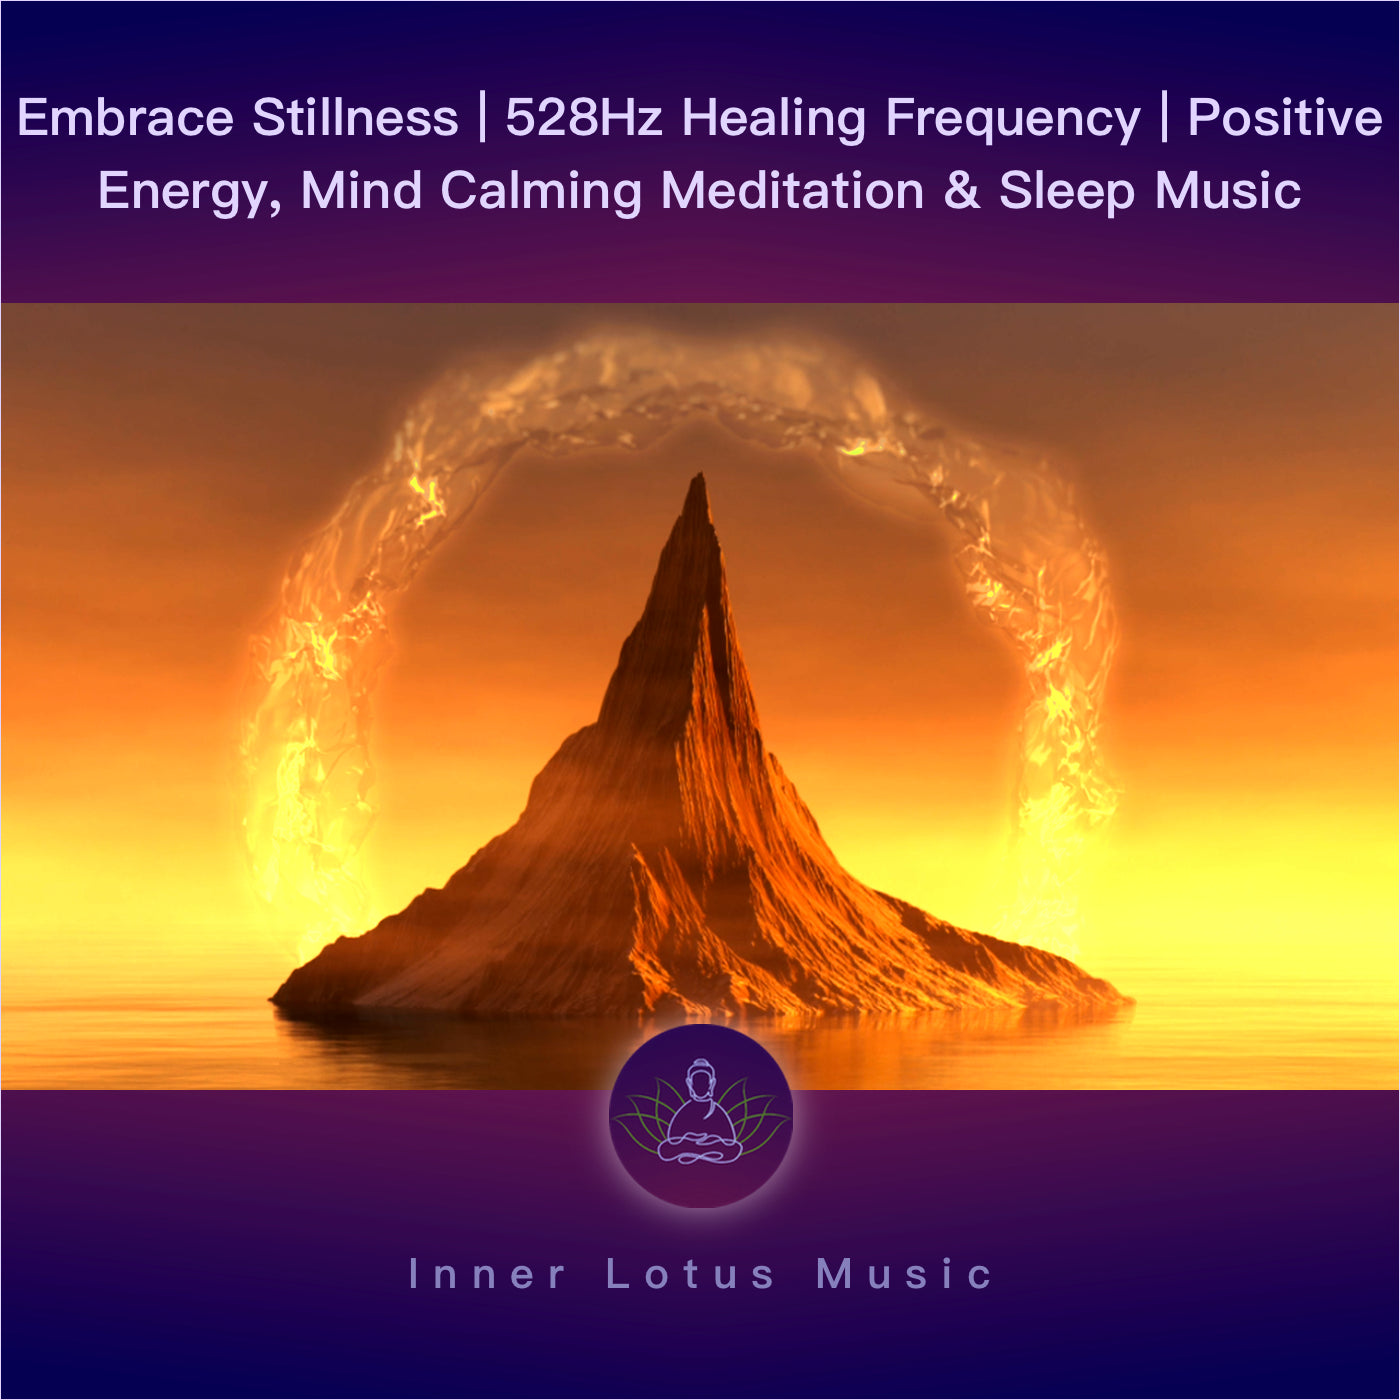 Embrace Stillness | 528Hz Healing Frequency | Positive Energy, Mind Calming Meditation & Sleep Music